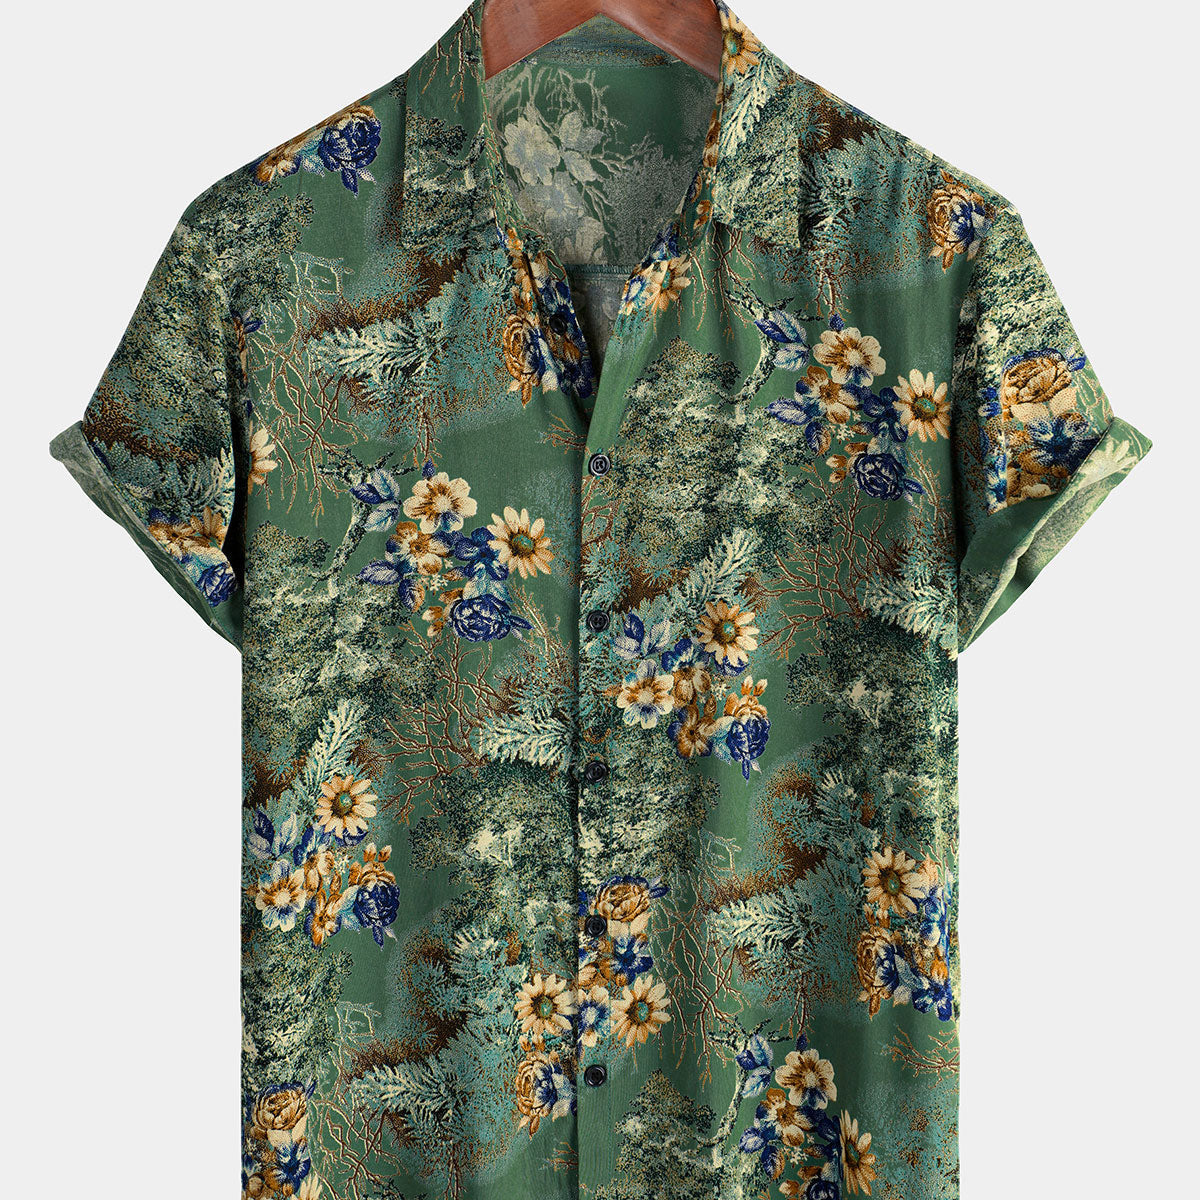 Chemise à manches courtes pour hommes, rétro, floral, vert, vacances d'été